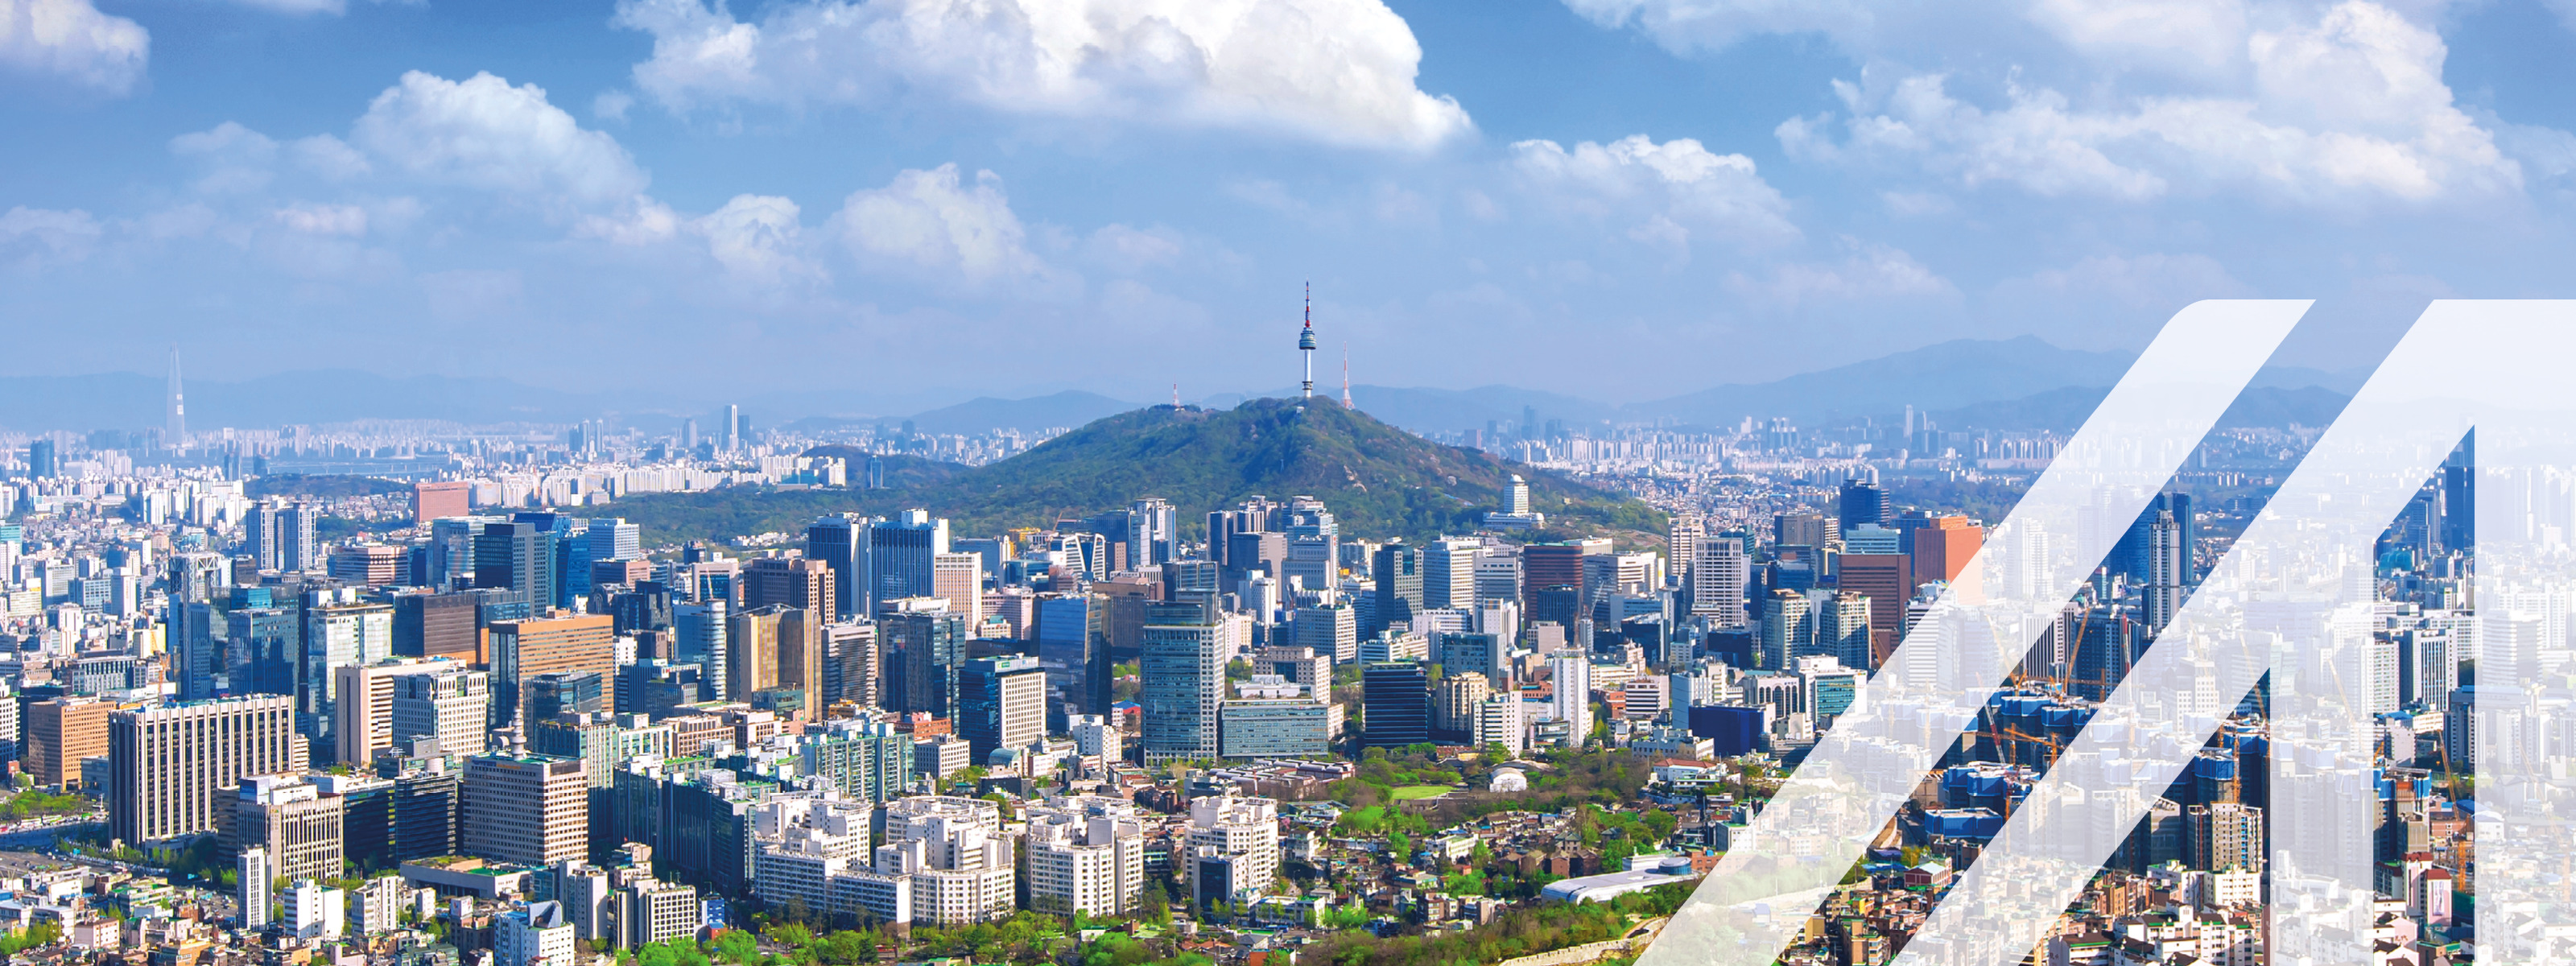 Blick auf das Stadtbild und den Seoul Tower in Seoul, Südkorea, unter blauem Himmel mit einigen Wolken. Über das Bild wurde ein weißes Austria A gelegt.